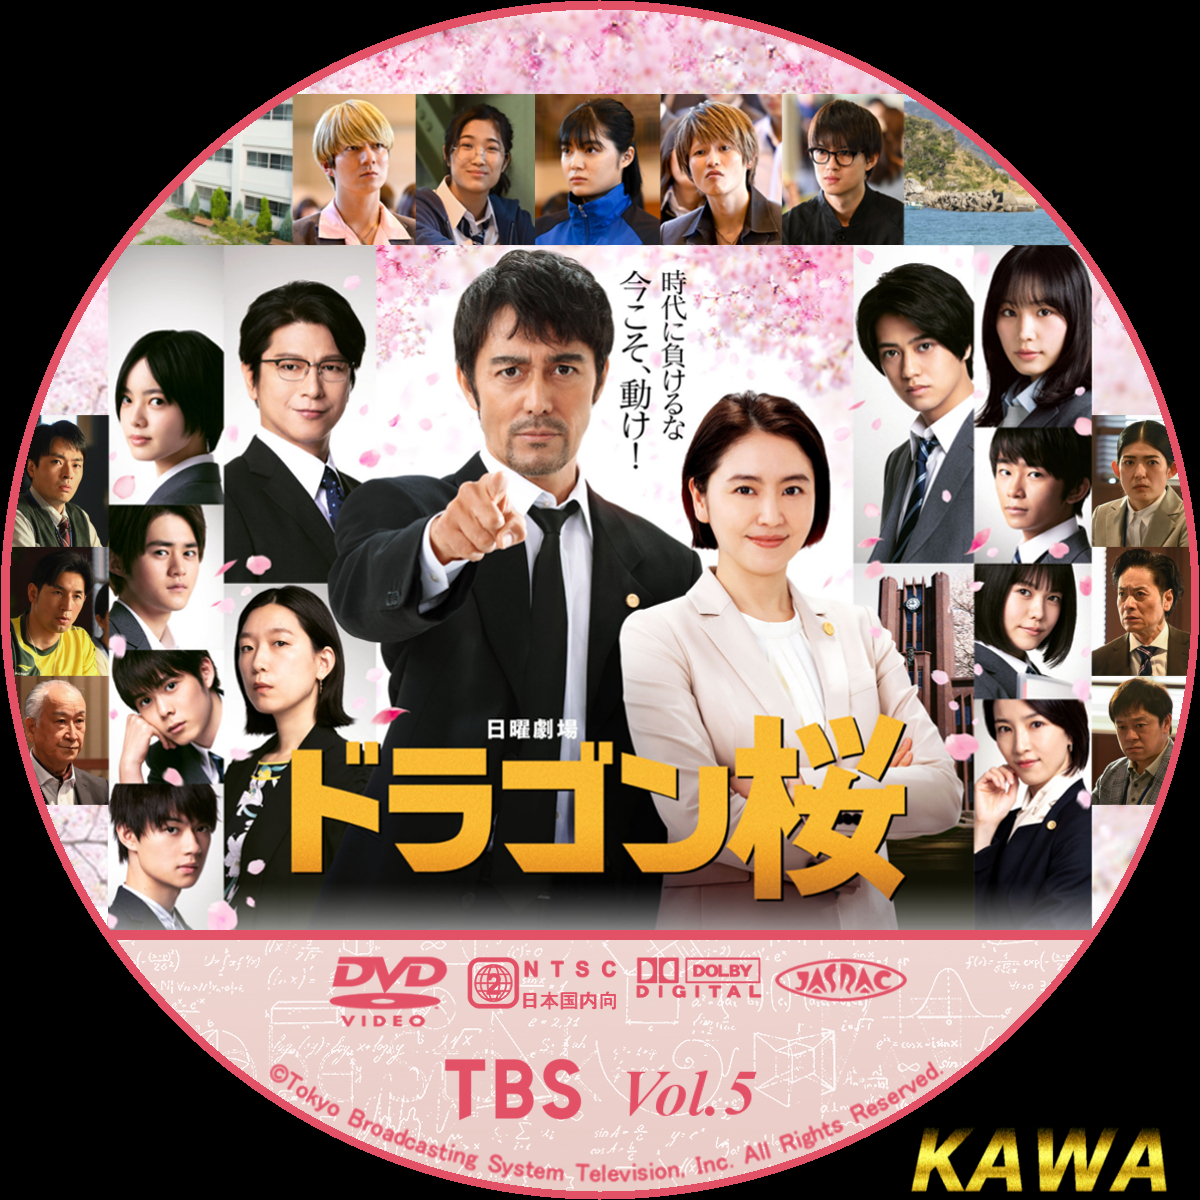 ドラゴン桜DVD BOX(2021年版ディレクターズカット)ボックス 6枚組